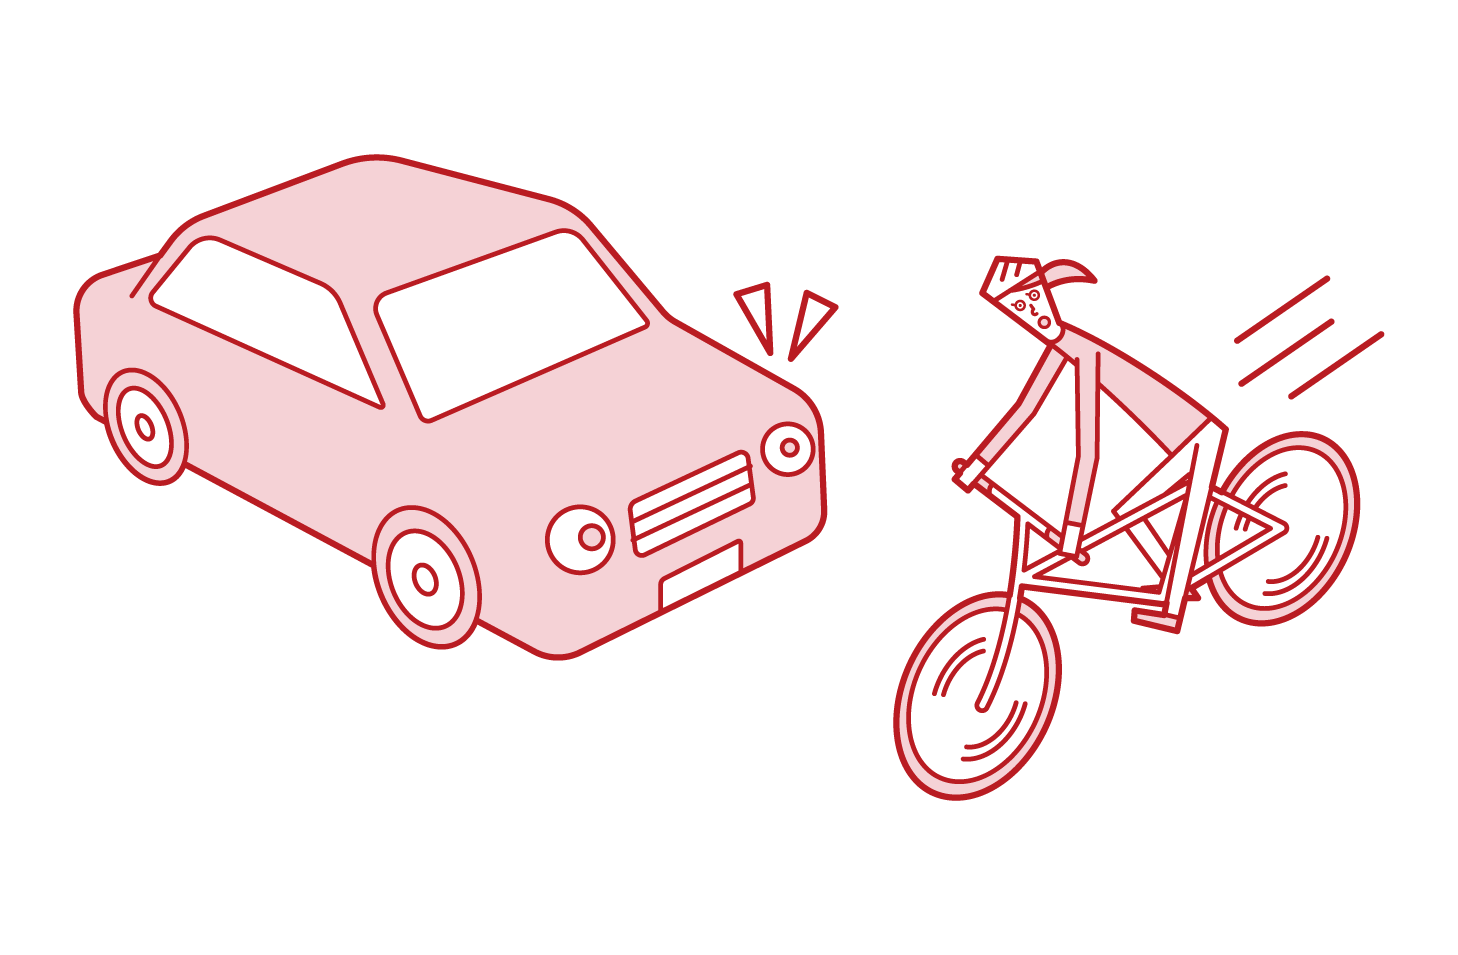 자전거(남성)가 도로로 날아가는 그림